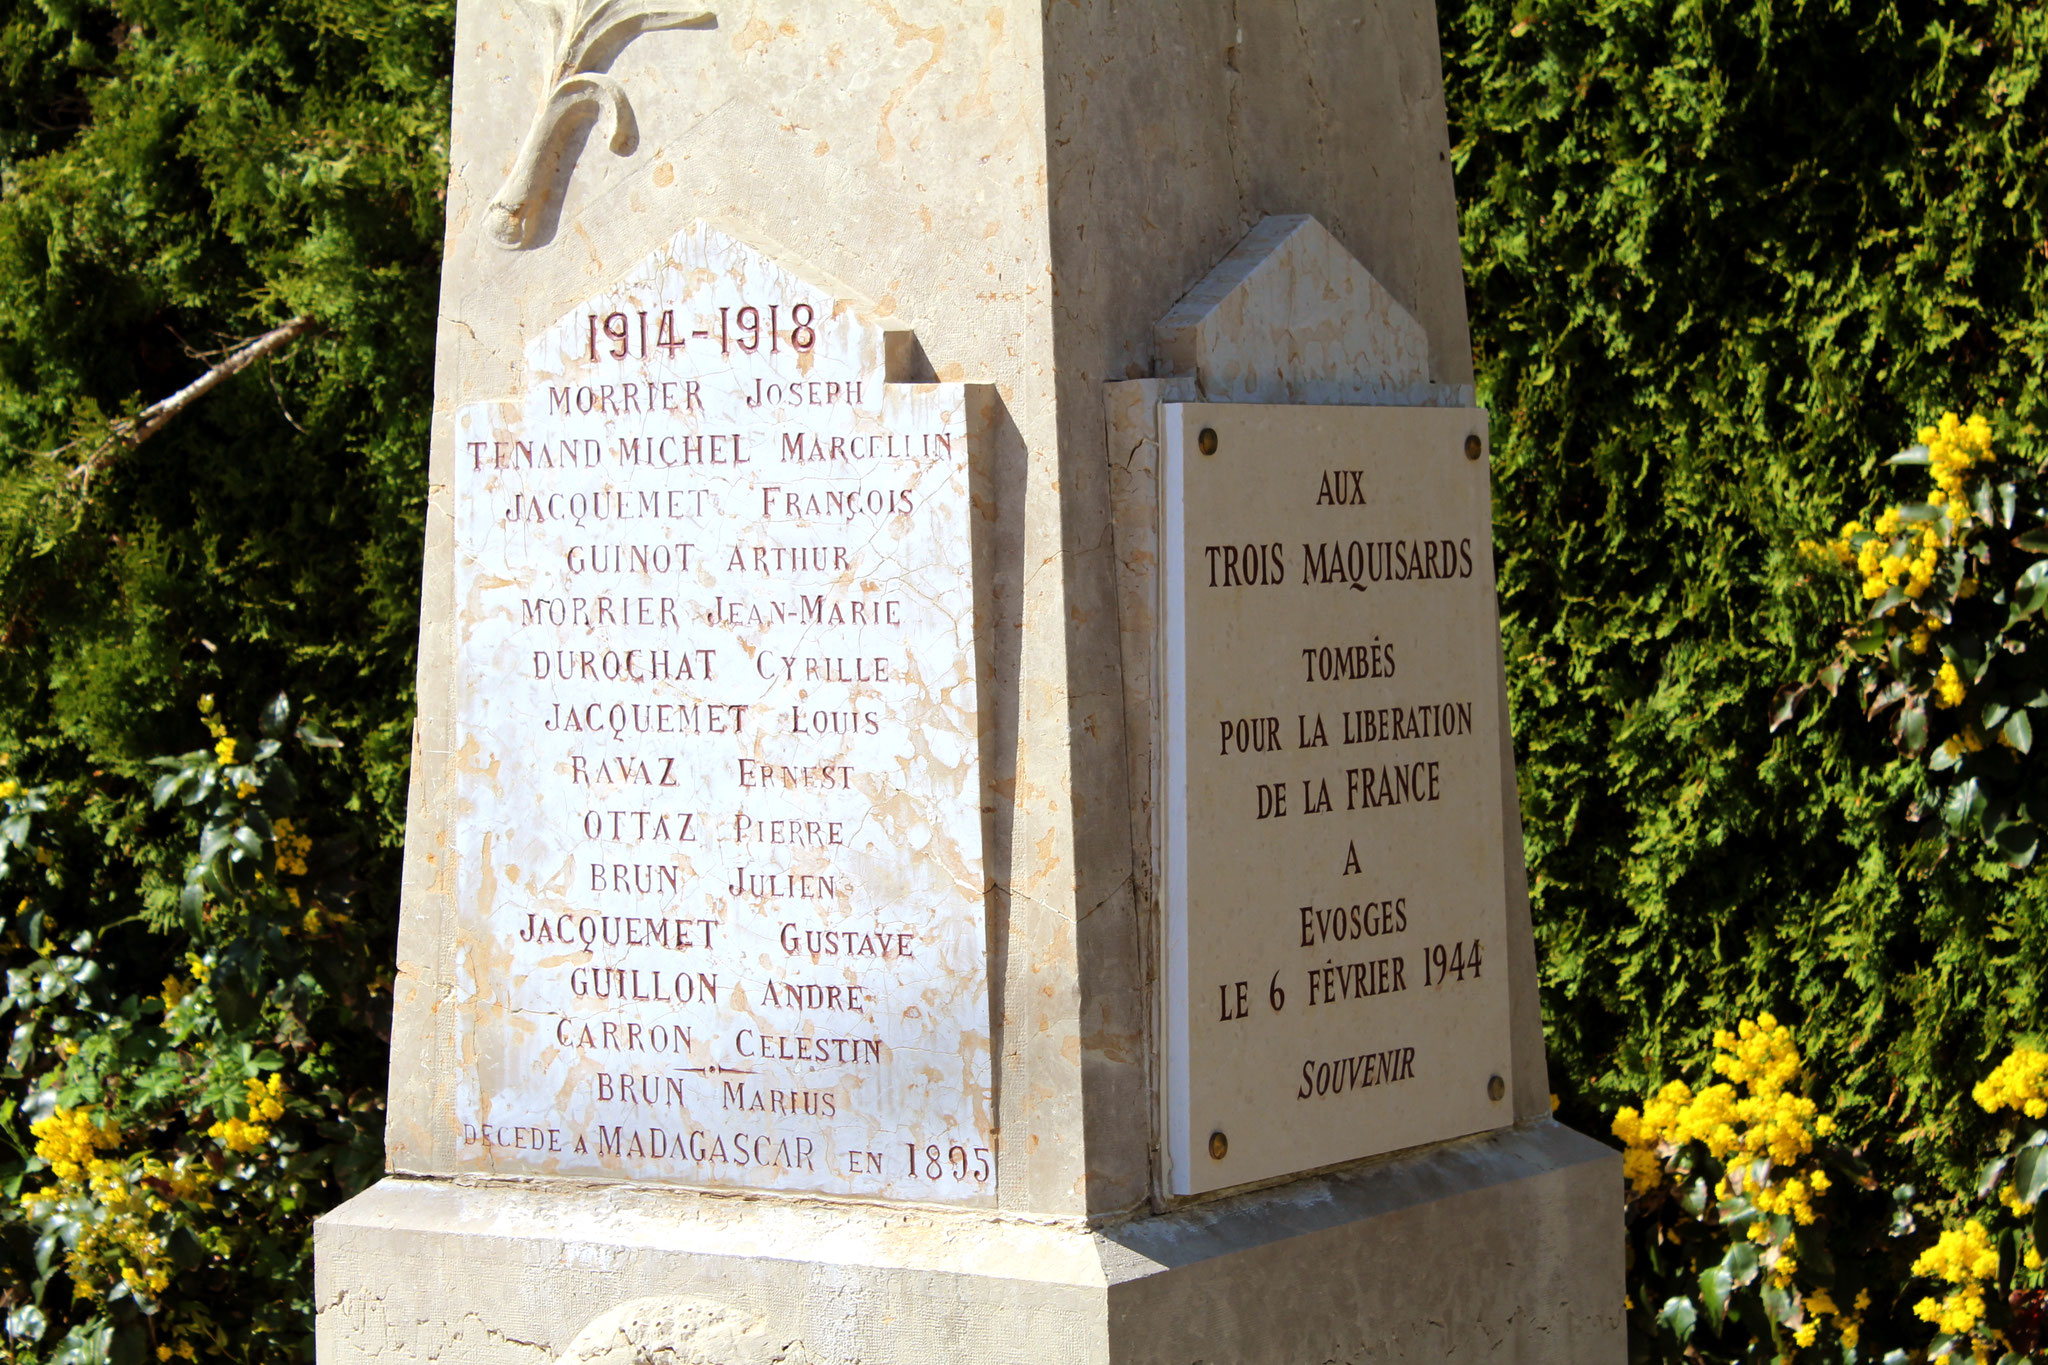 Inscription du Monumant aux Morts d'Évosges